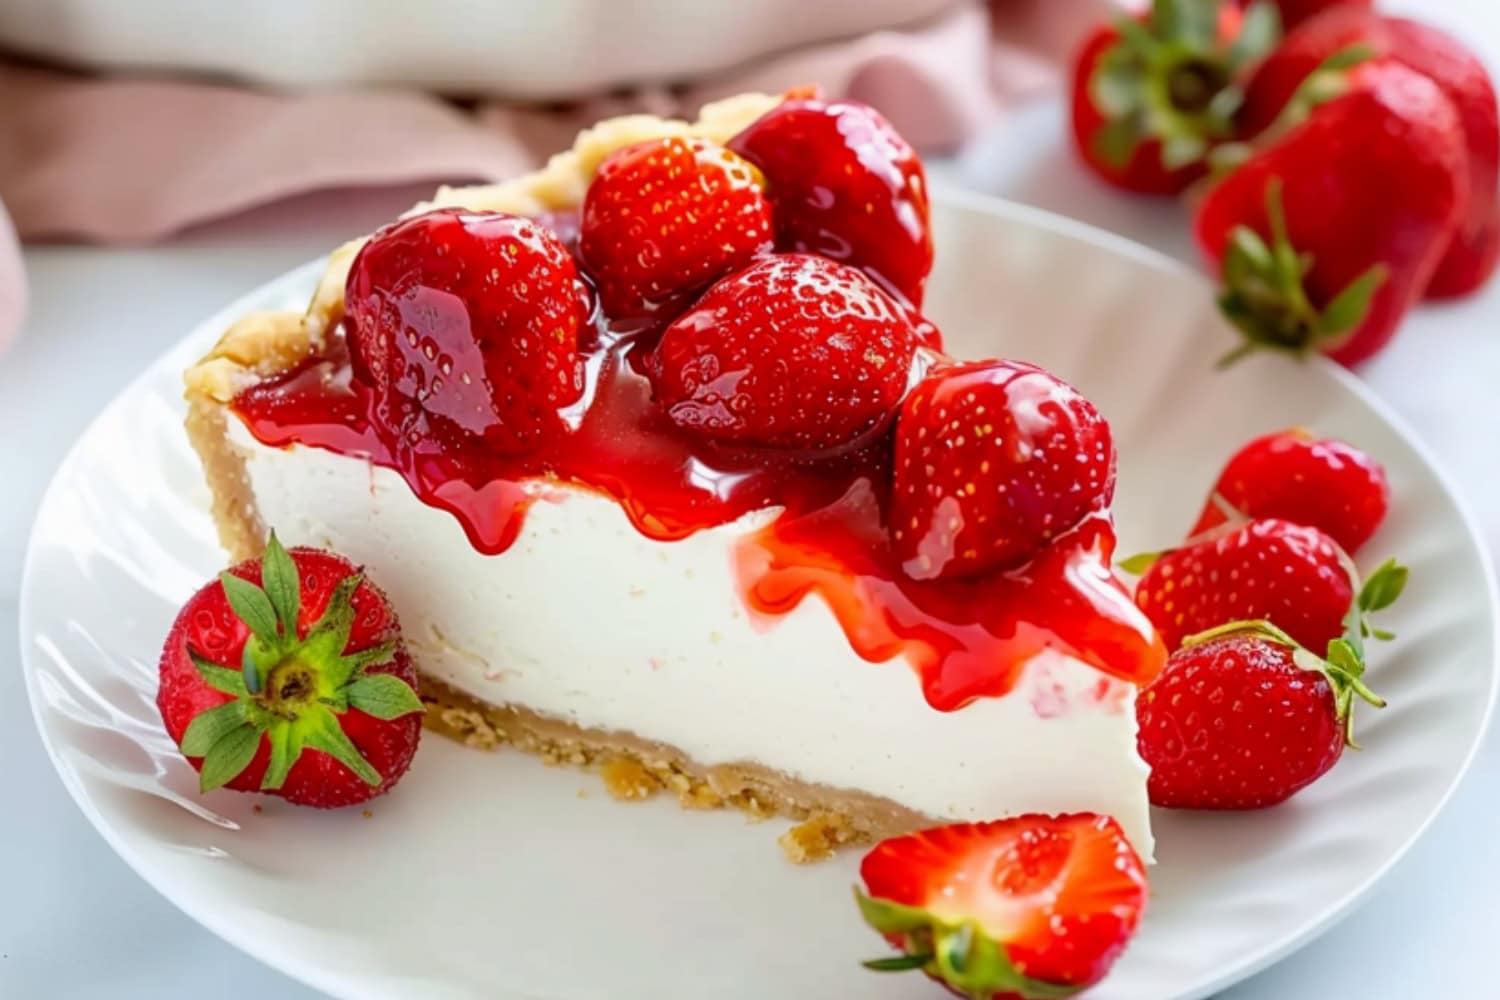 Slice of strawberry cream pie in a white plate.